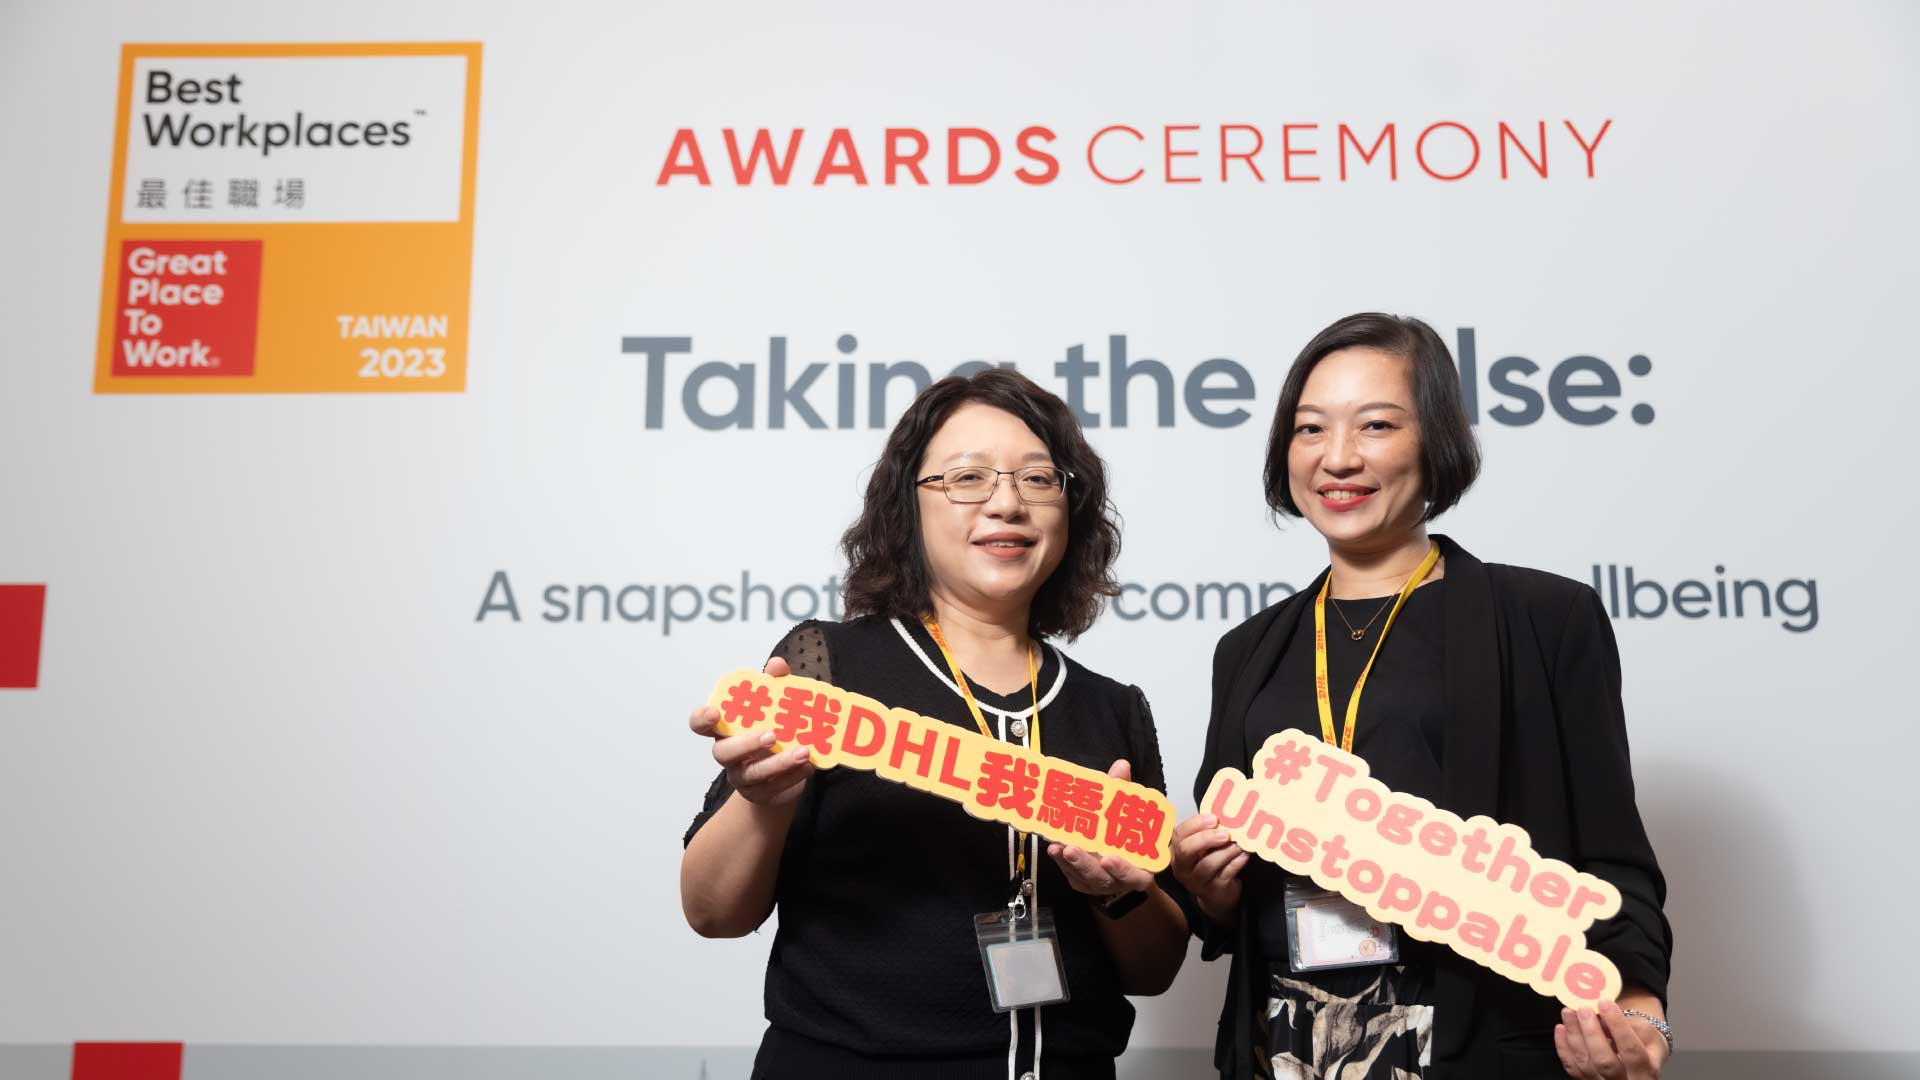 Awards-Ceremony-Taking-the-pulse-Taiwan-13